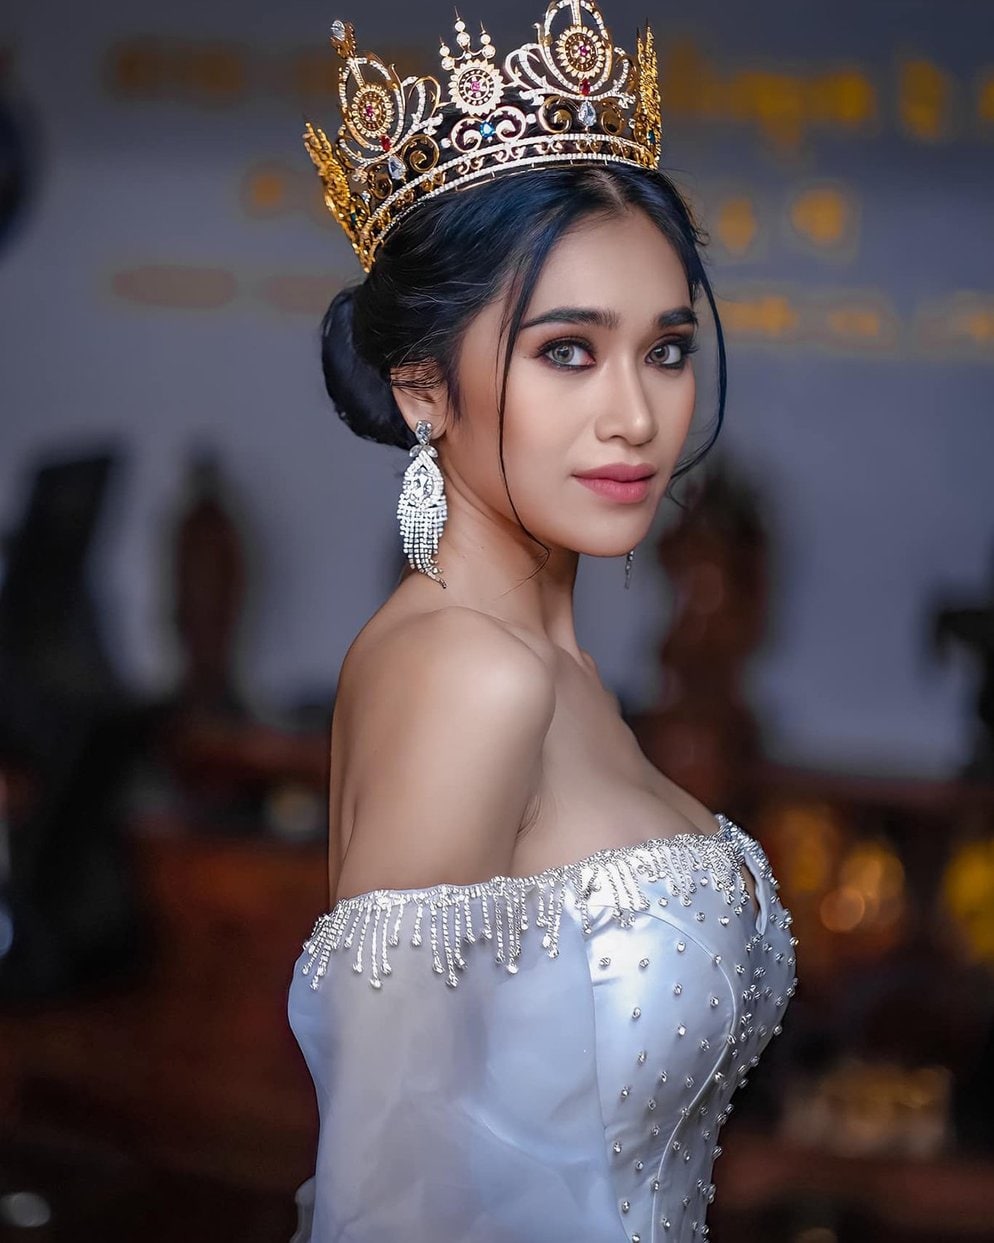 ប៉ូគឹមថេង សុតធីតា បង្ហោះសារដ៏មានន័យ មុនប្រគល់មកុដ Miss Grand Cambodia ដល់ម្ចាស់ថ្មី